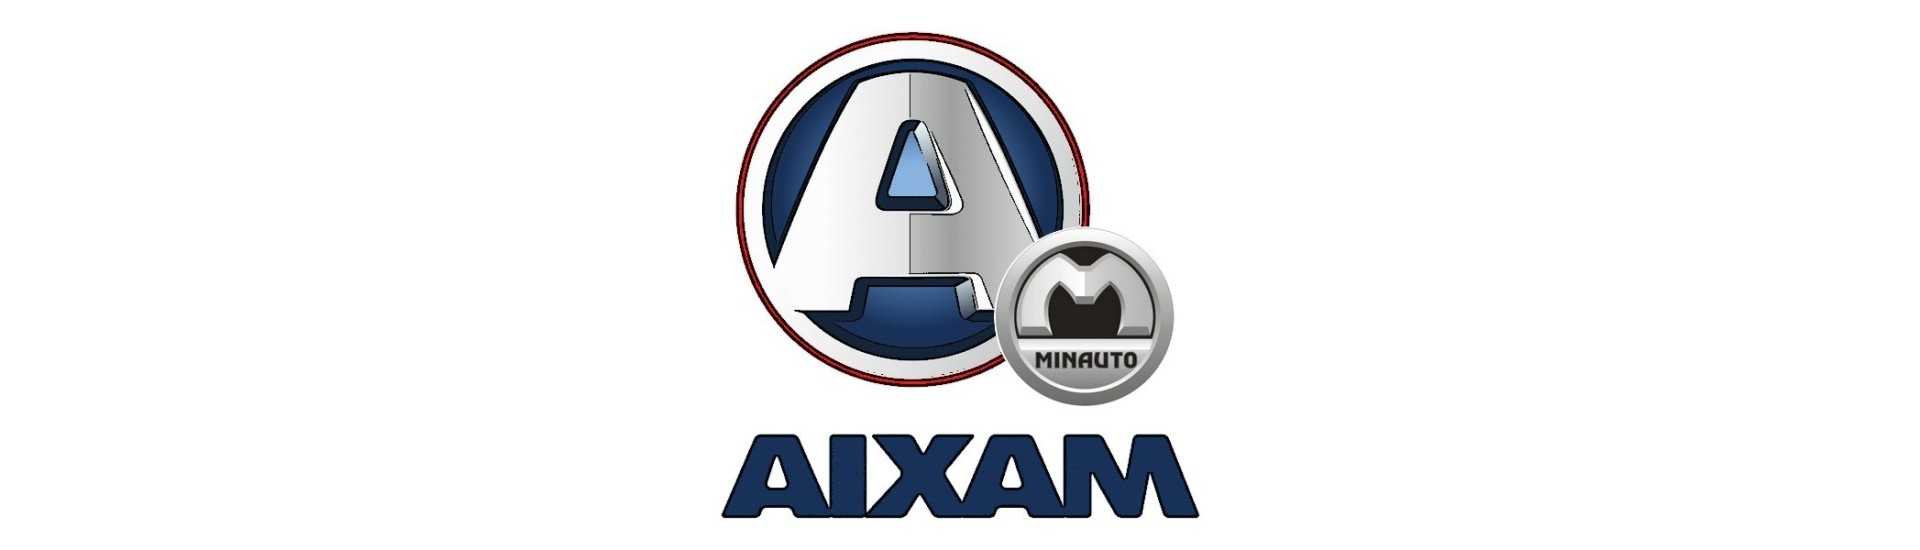 Fahre zum besten Preis für Auto ohne Lizenz Aixam Minauto